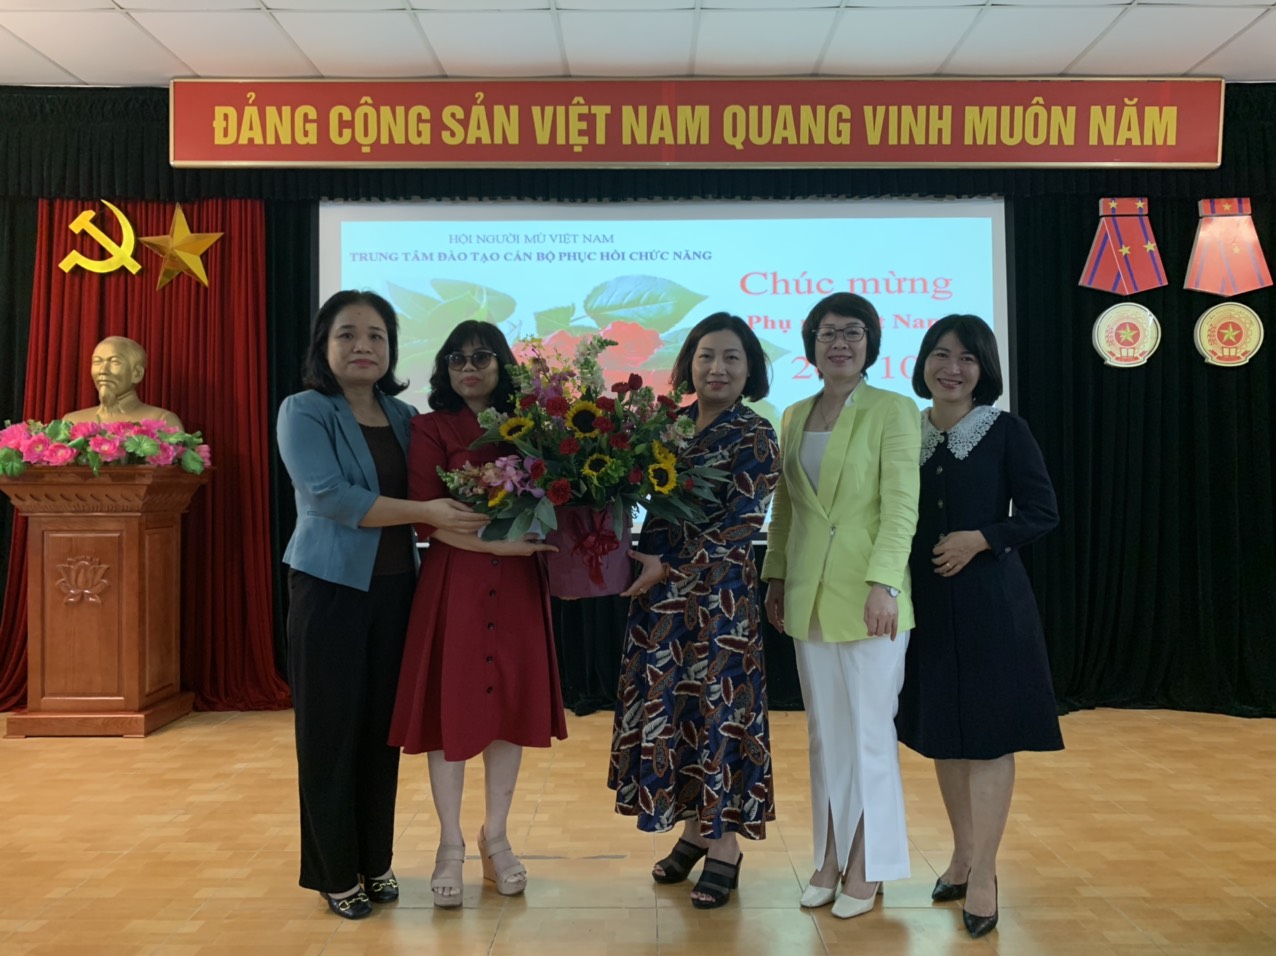 Trung tâm Đào tạo cán bộ PHCN cho người mù tổ chức tọa đàm kỉ niệm ngày Phụ nữ Việt Nam